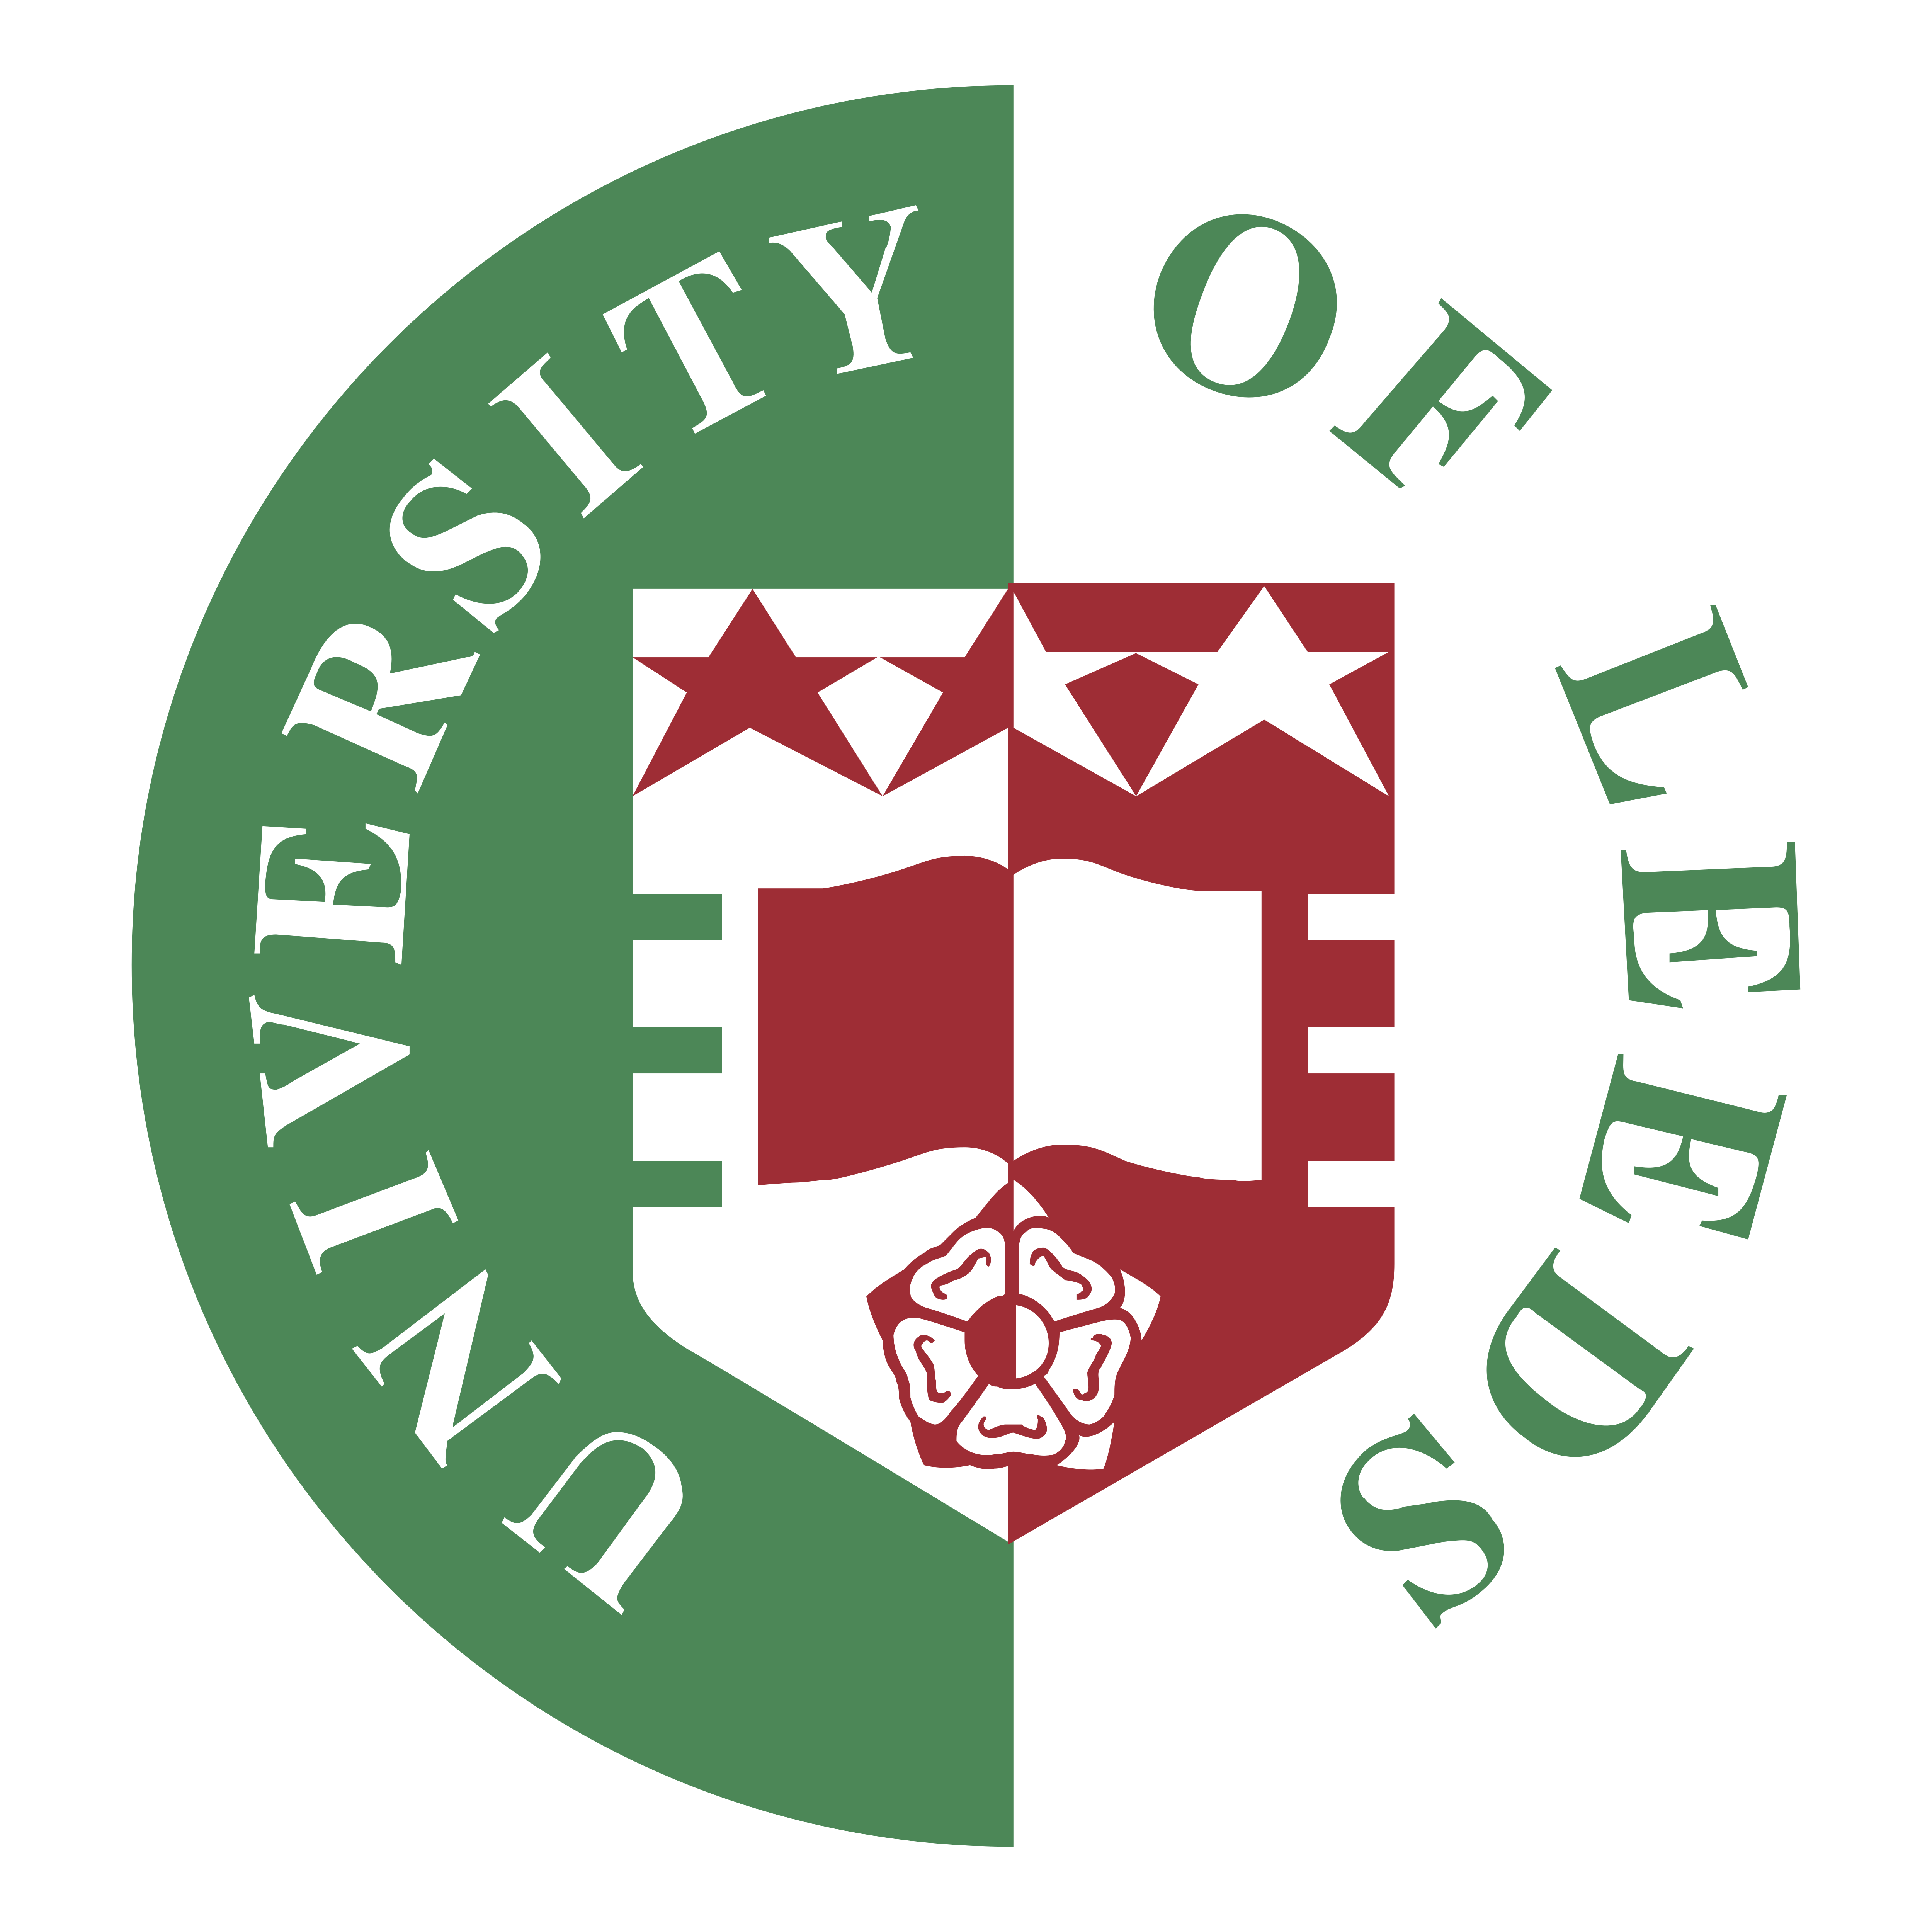 University of Leeds Logo Download